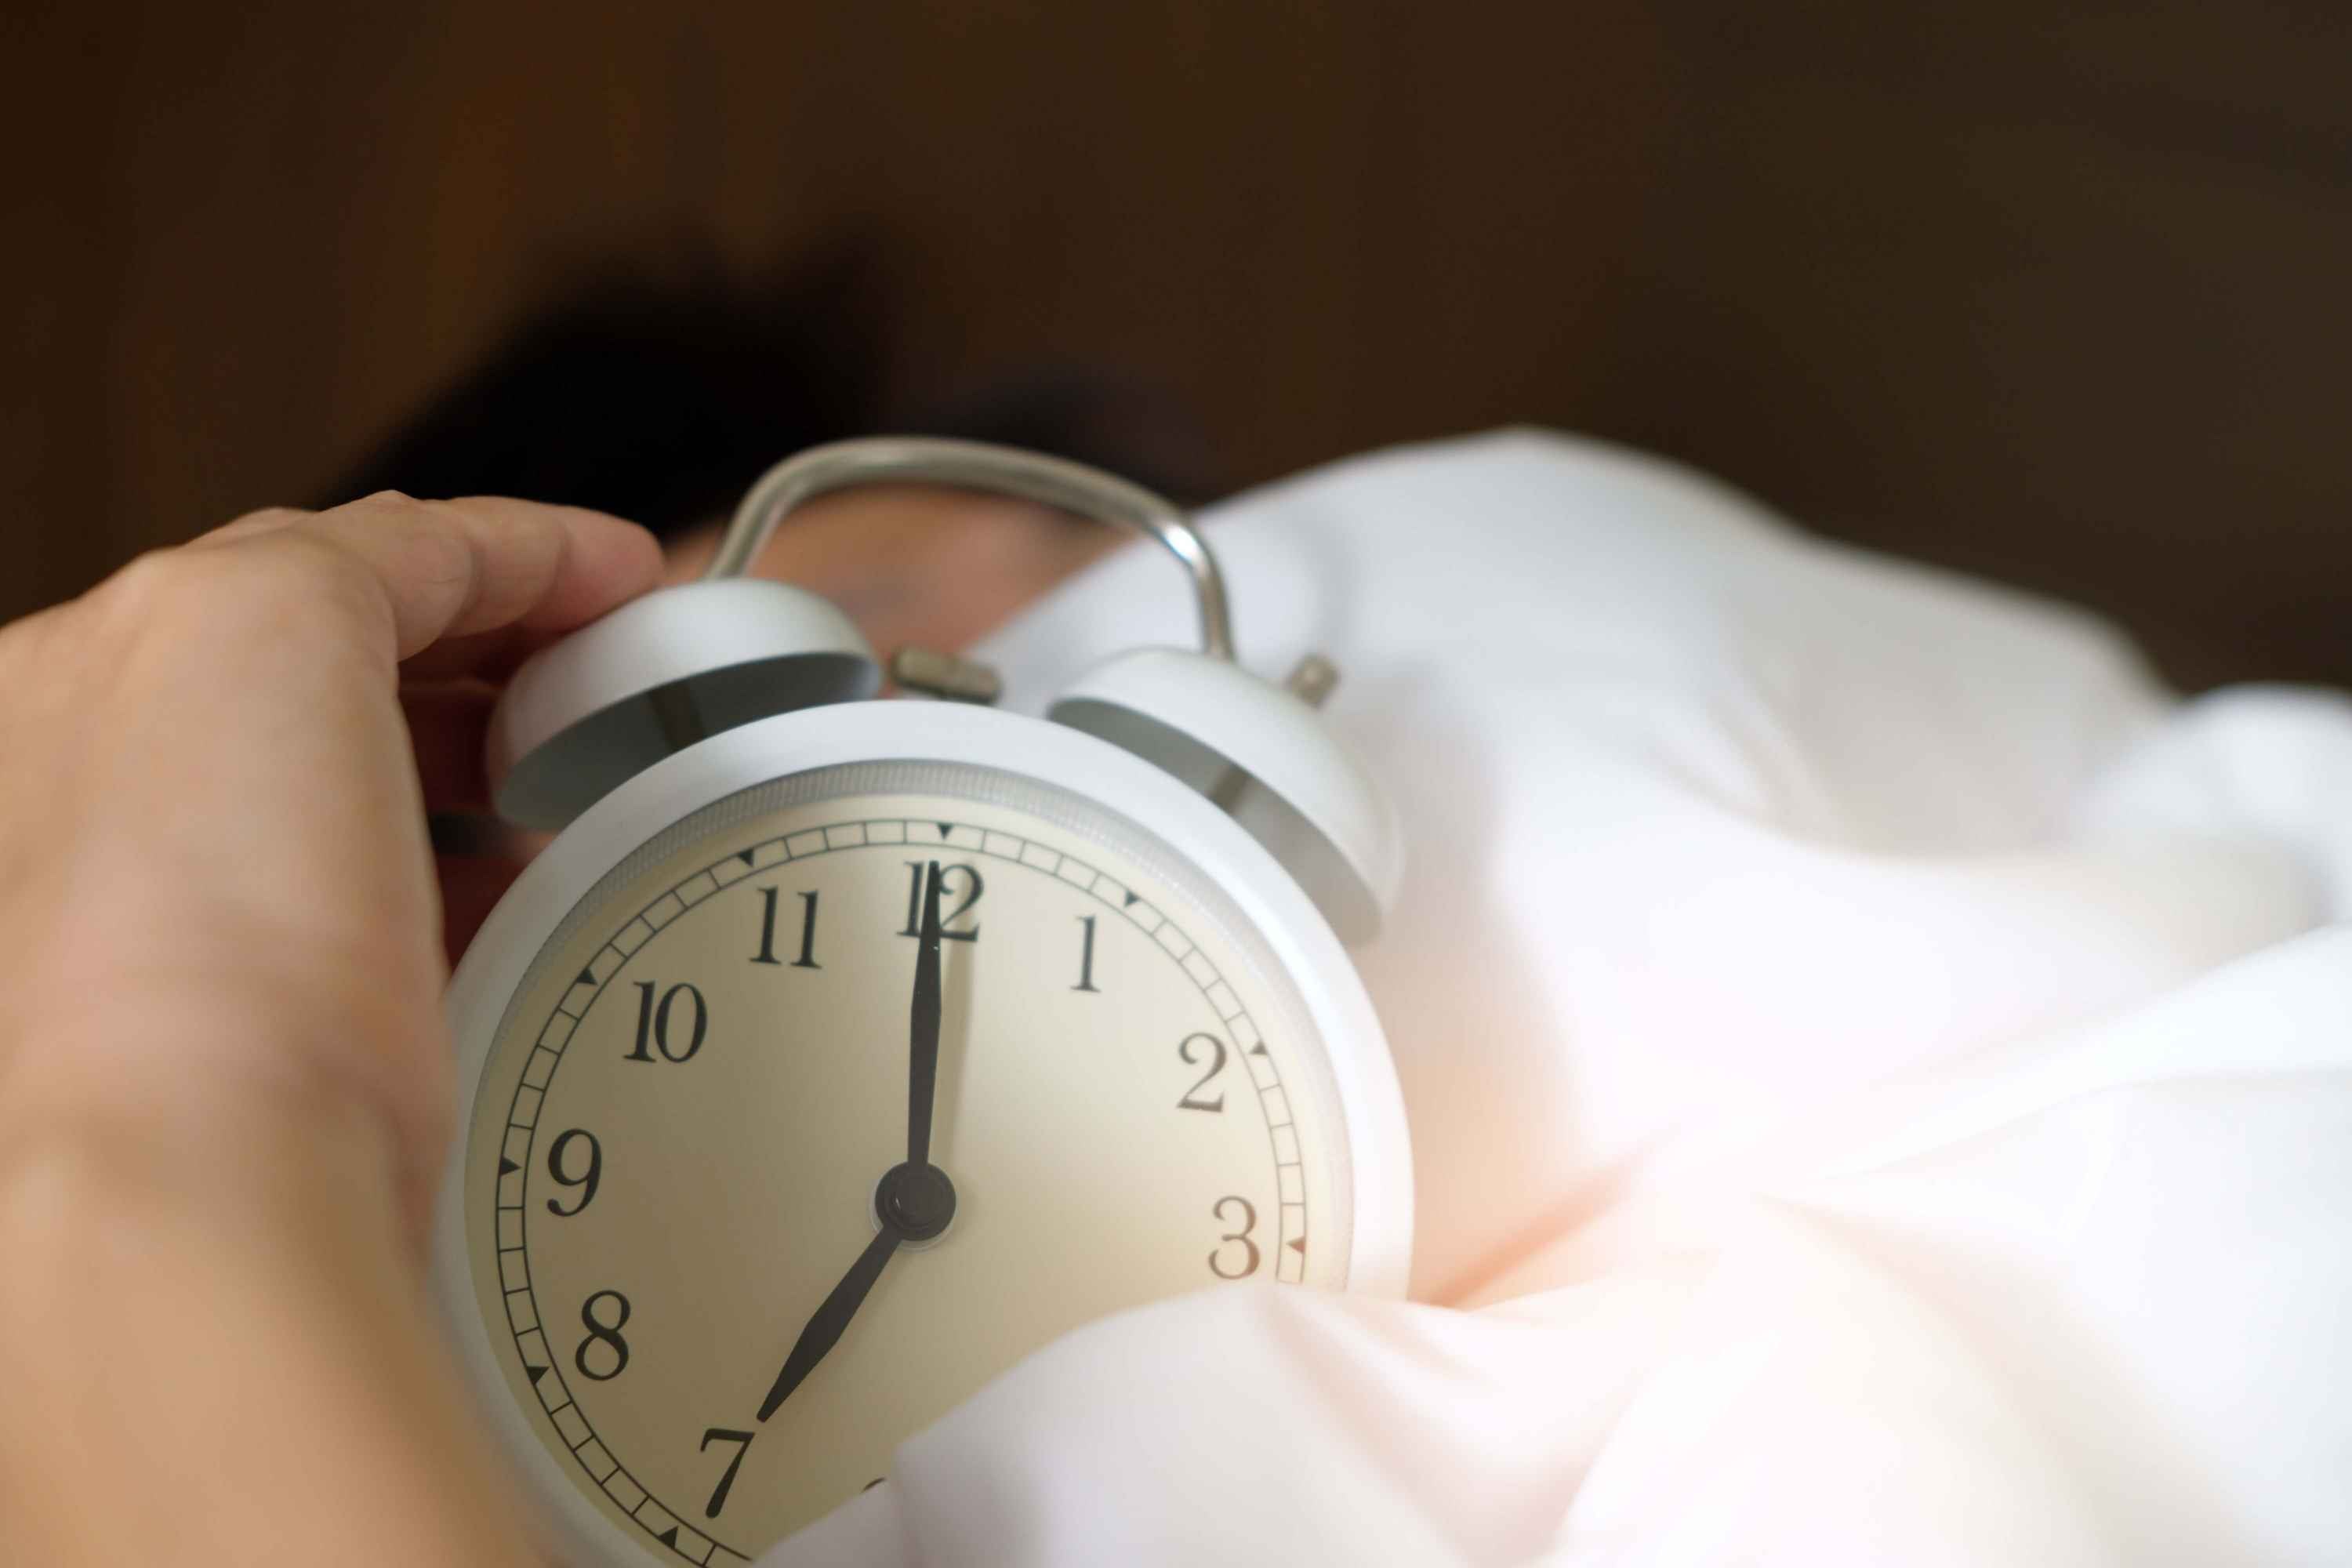 Alarm clock in hands in bed sheets 